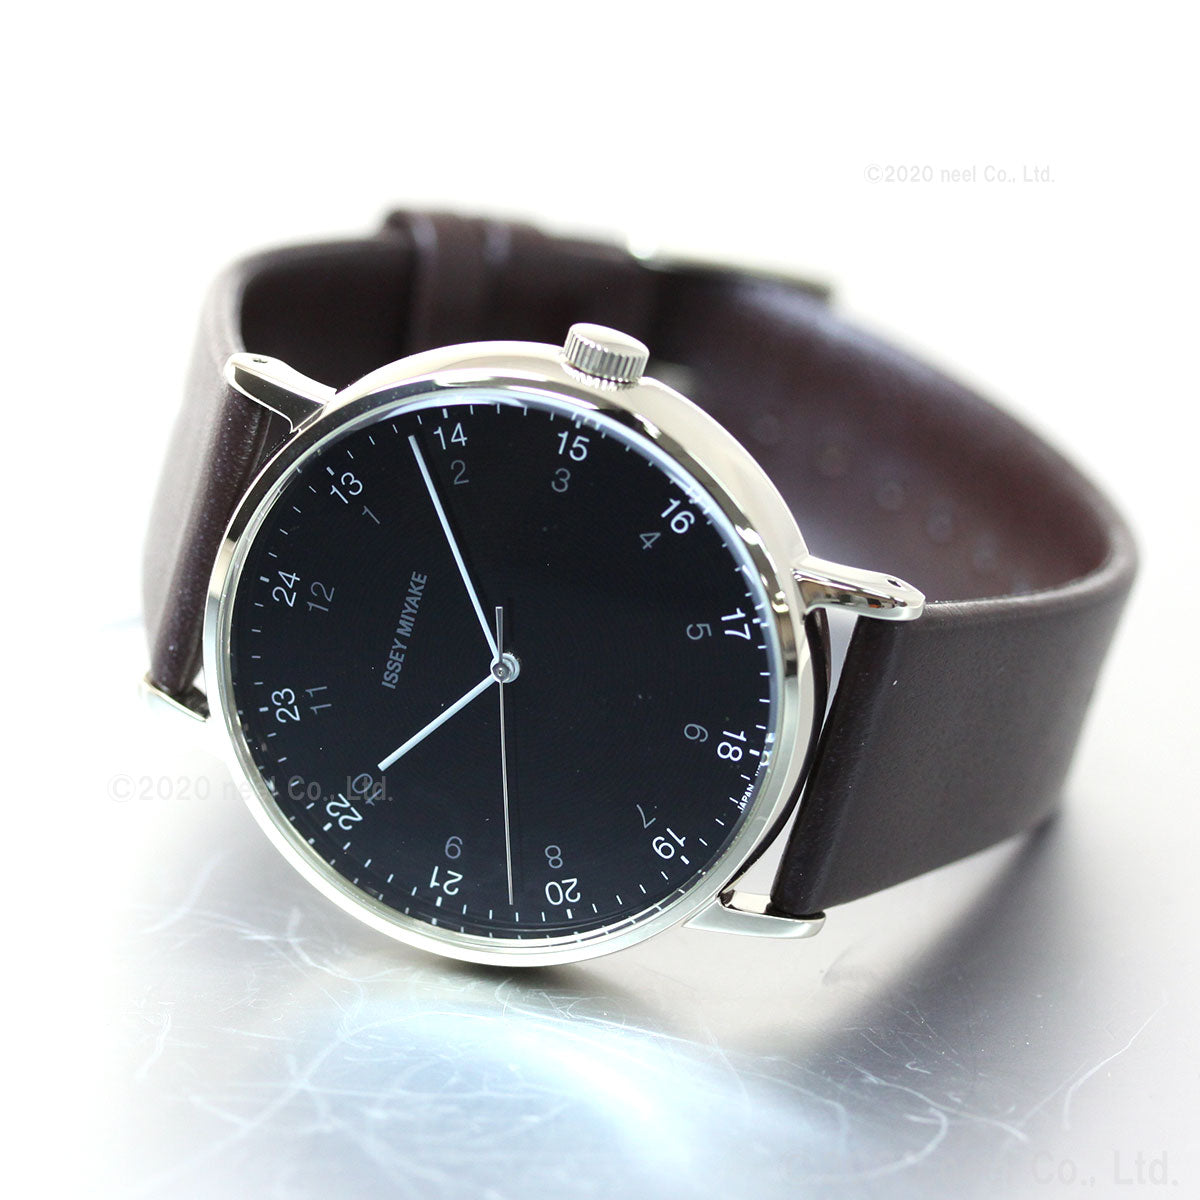 ISSEY MIYAKE イッセイミヤケ f エフ 日本製 革ベルト 39mm メンズ 腕時計 NYAJ006 ISSEY MIYAKE  ミッドナイトブルー 記念品 プレゼント ギフト メンズ腕時計